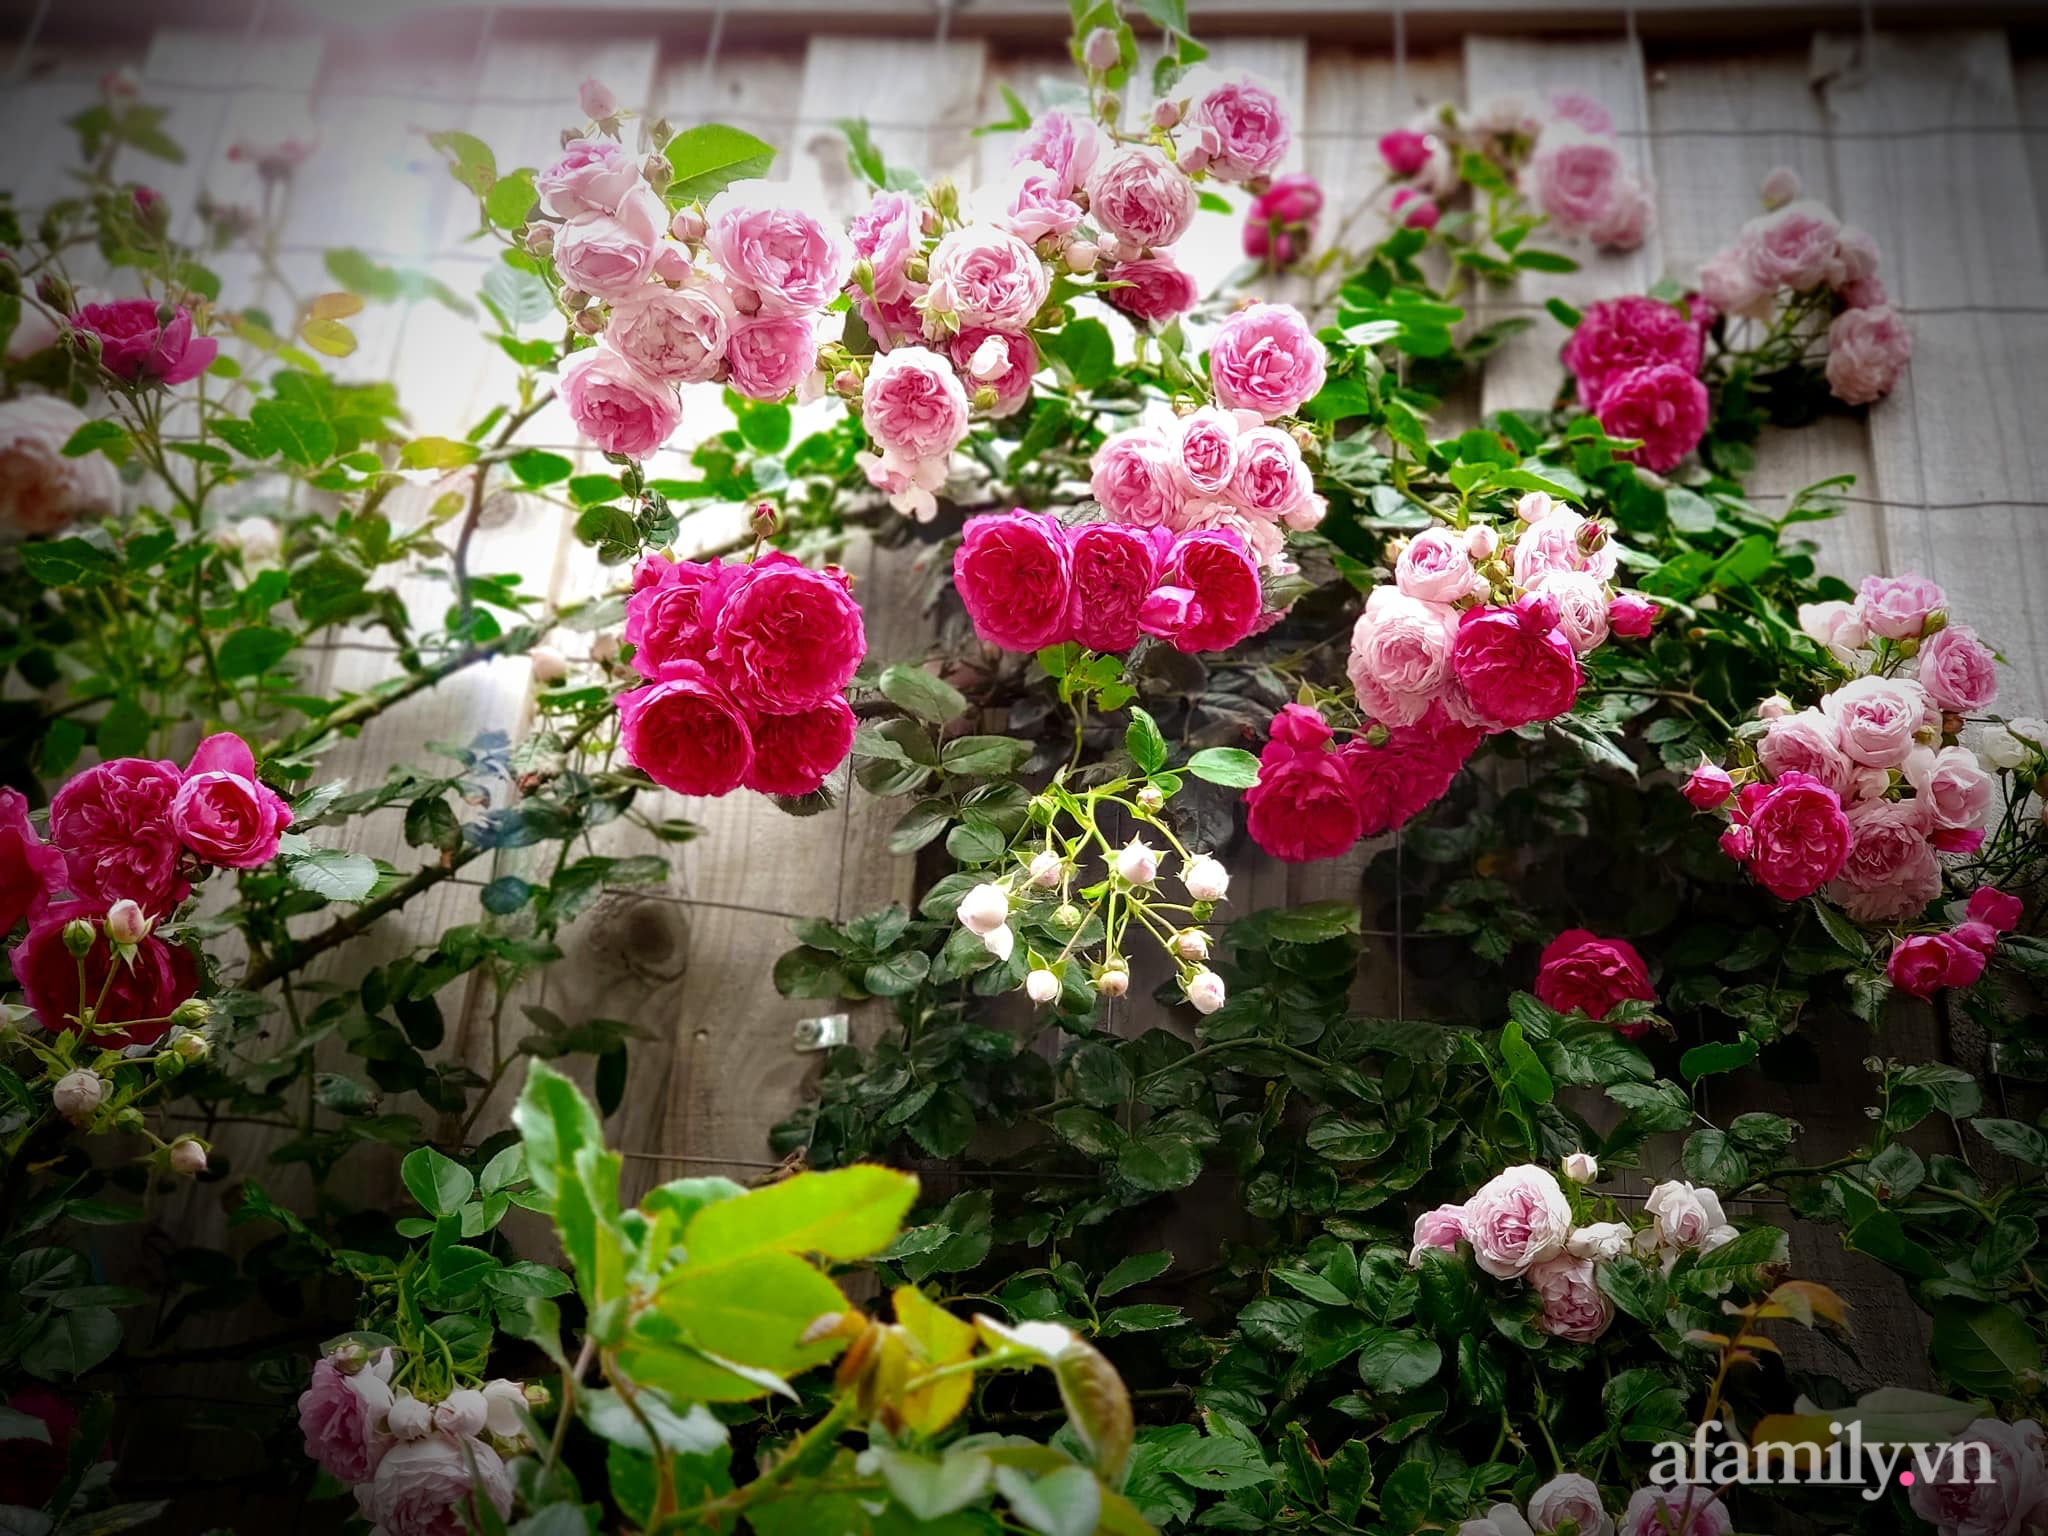 Vườn hồng 250m² ngát hương rực rỡ sắc màu đẹp như cổ tích của mẹ Việt ở Úc - Ảnh 28.